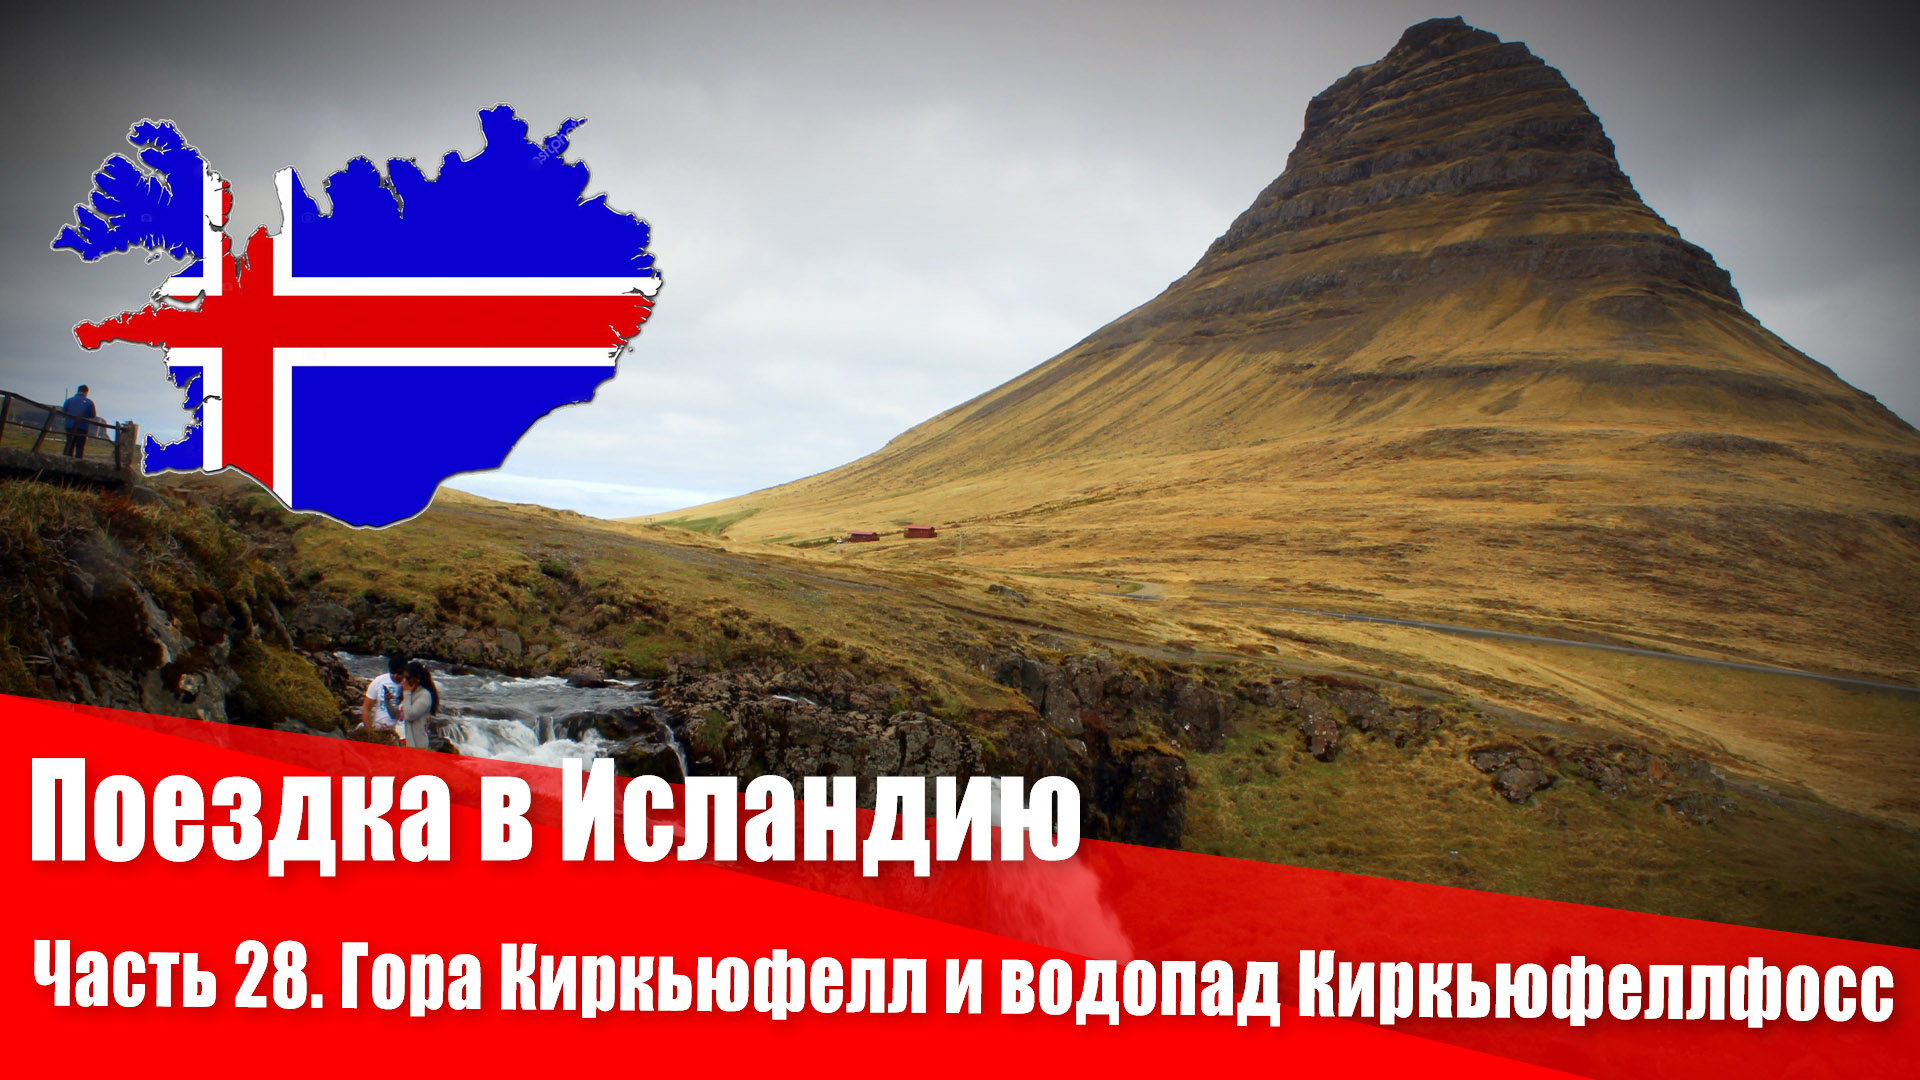 Поездка в Исландию. 28 часть. Гора Киркьюфелл и водопад Киркьюфеллфосс